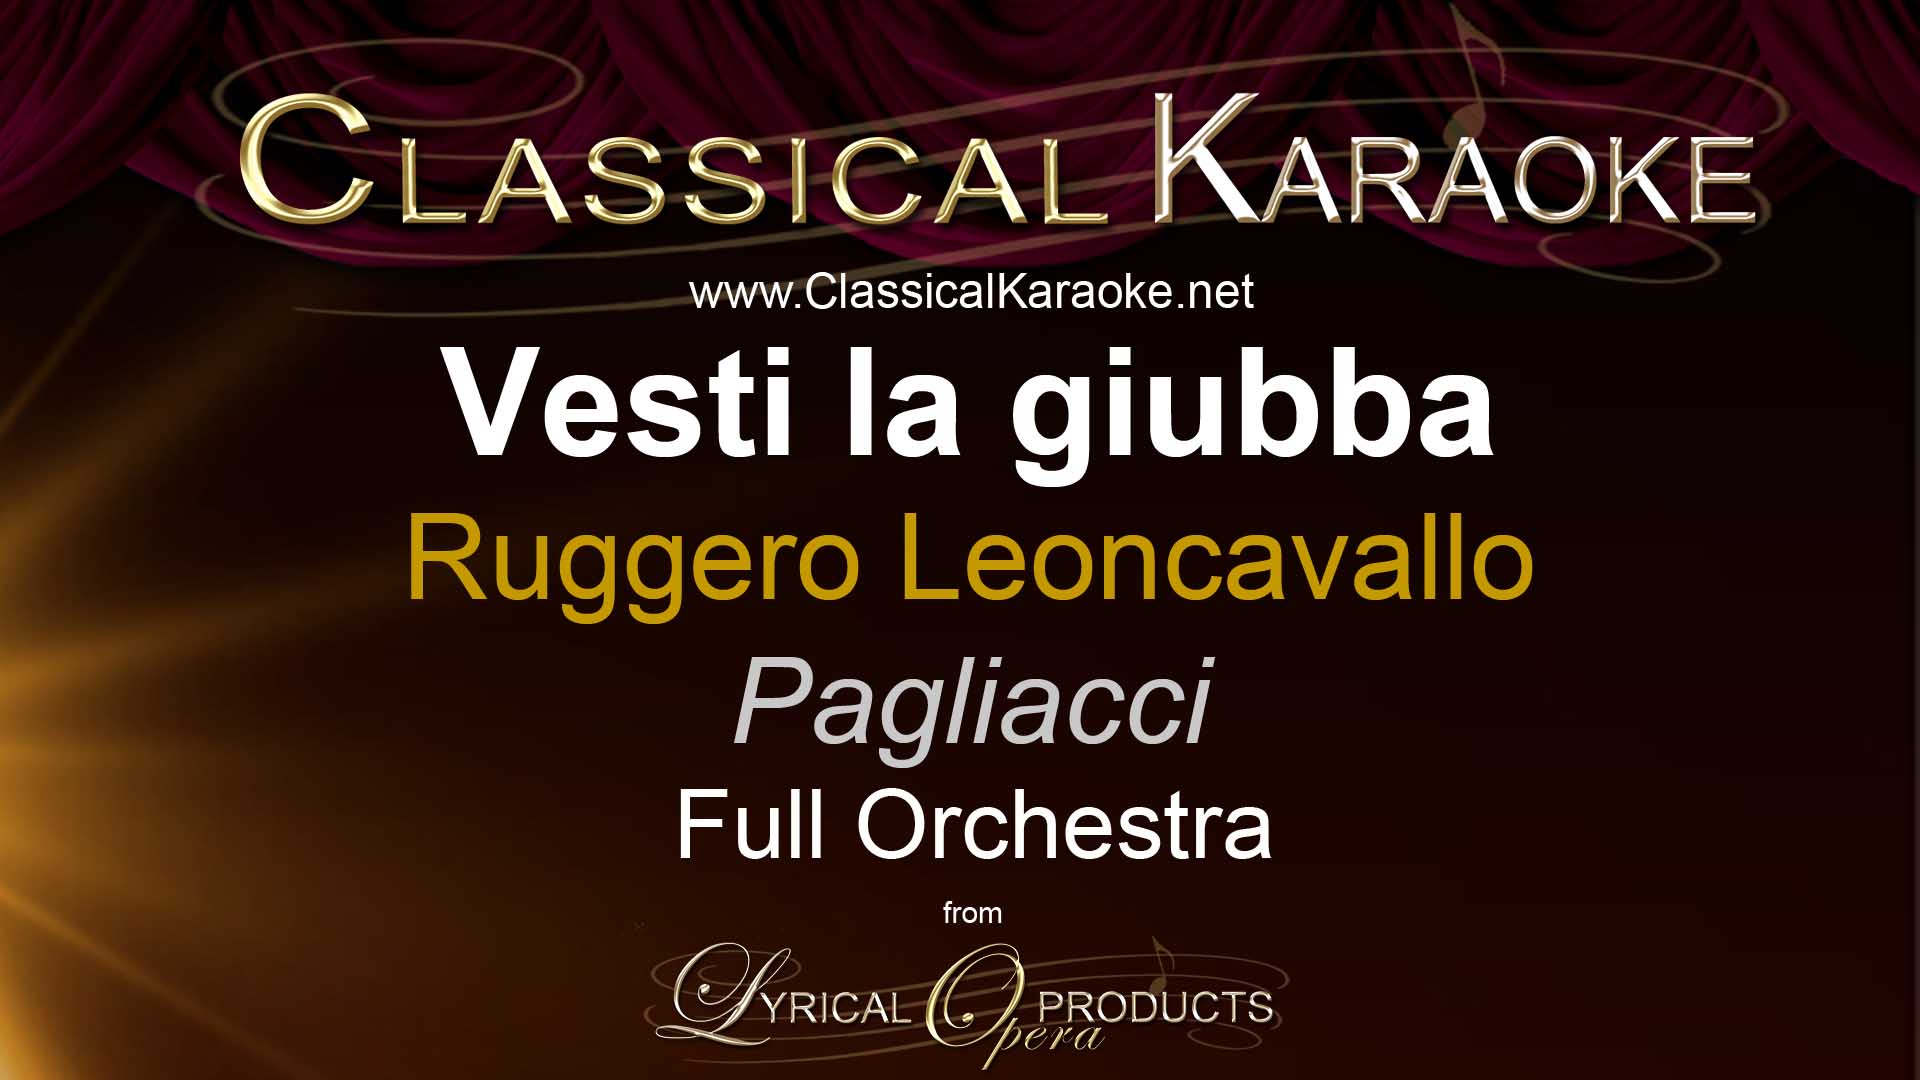 Vesti la giubba, from Pagliacci, Full Orchestral Accompaniment (karaoke) track